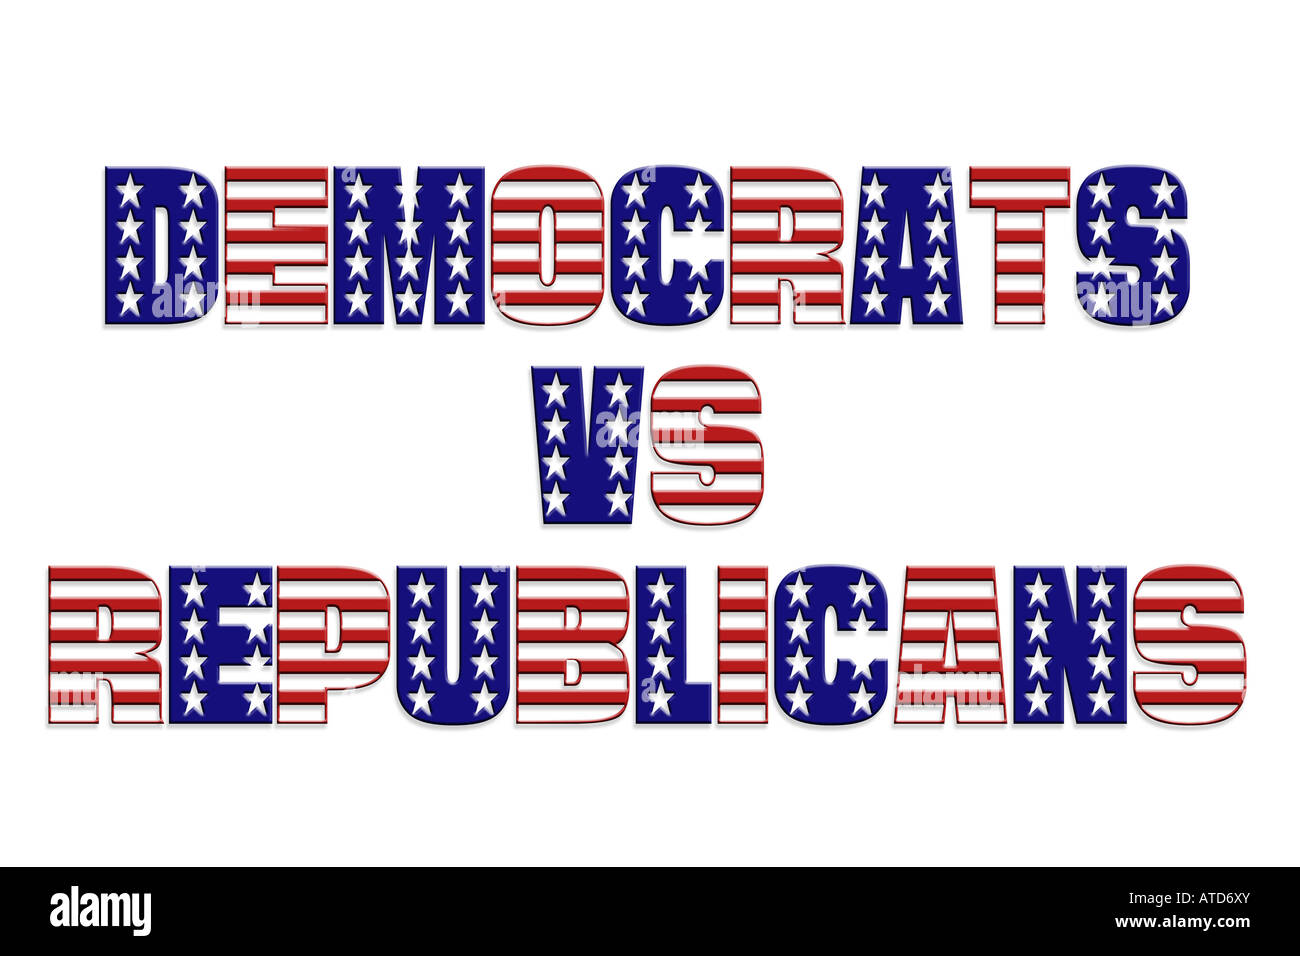 Demokraten gegen Republikaner Wörter mit überlagerten Sterne und Streifen-Muster Stockfoto